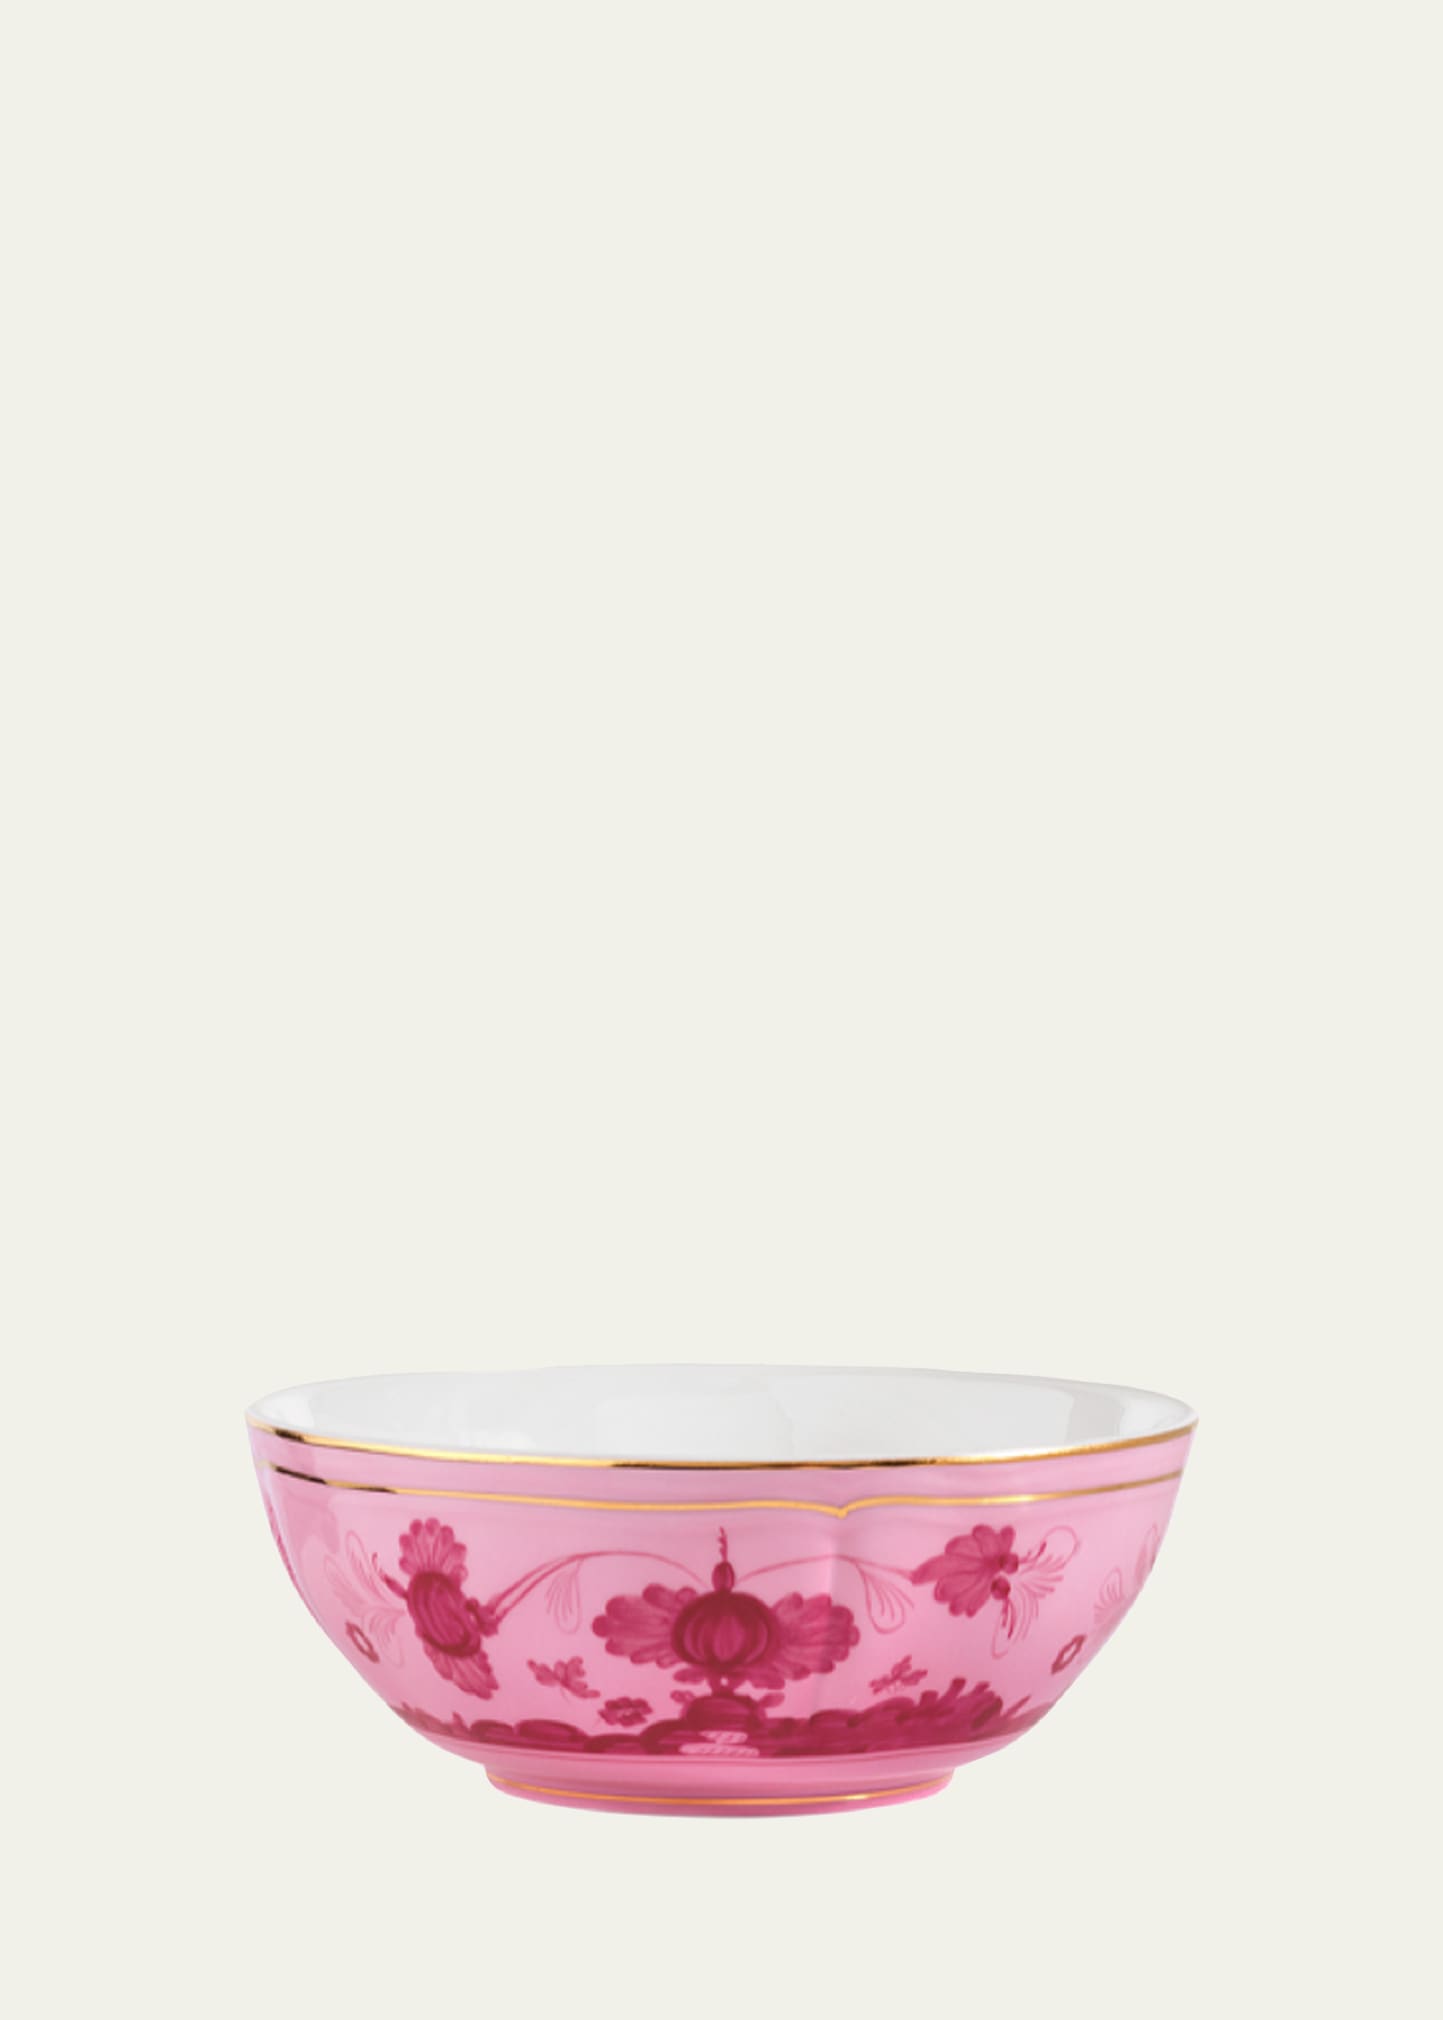 GINORI 1735 Oriente Italiano Cereal Bowl, Porpora